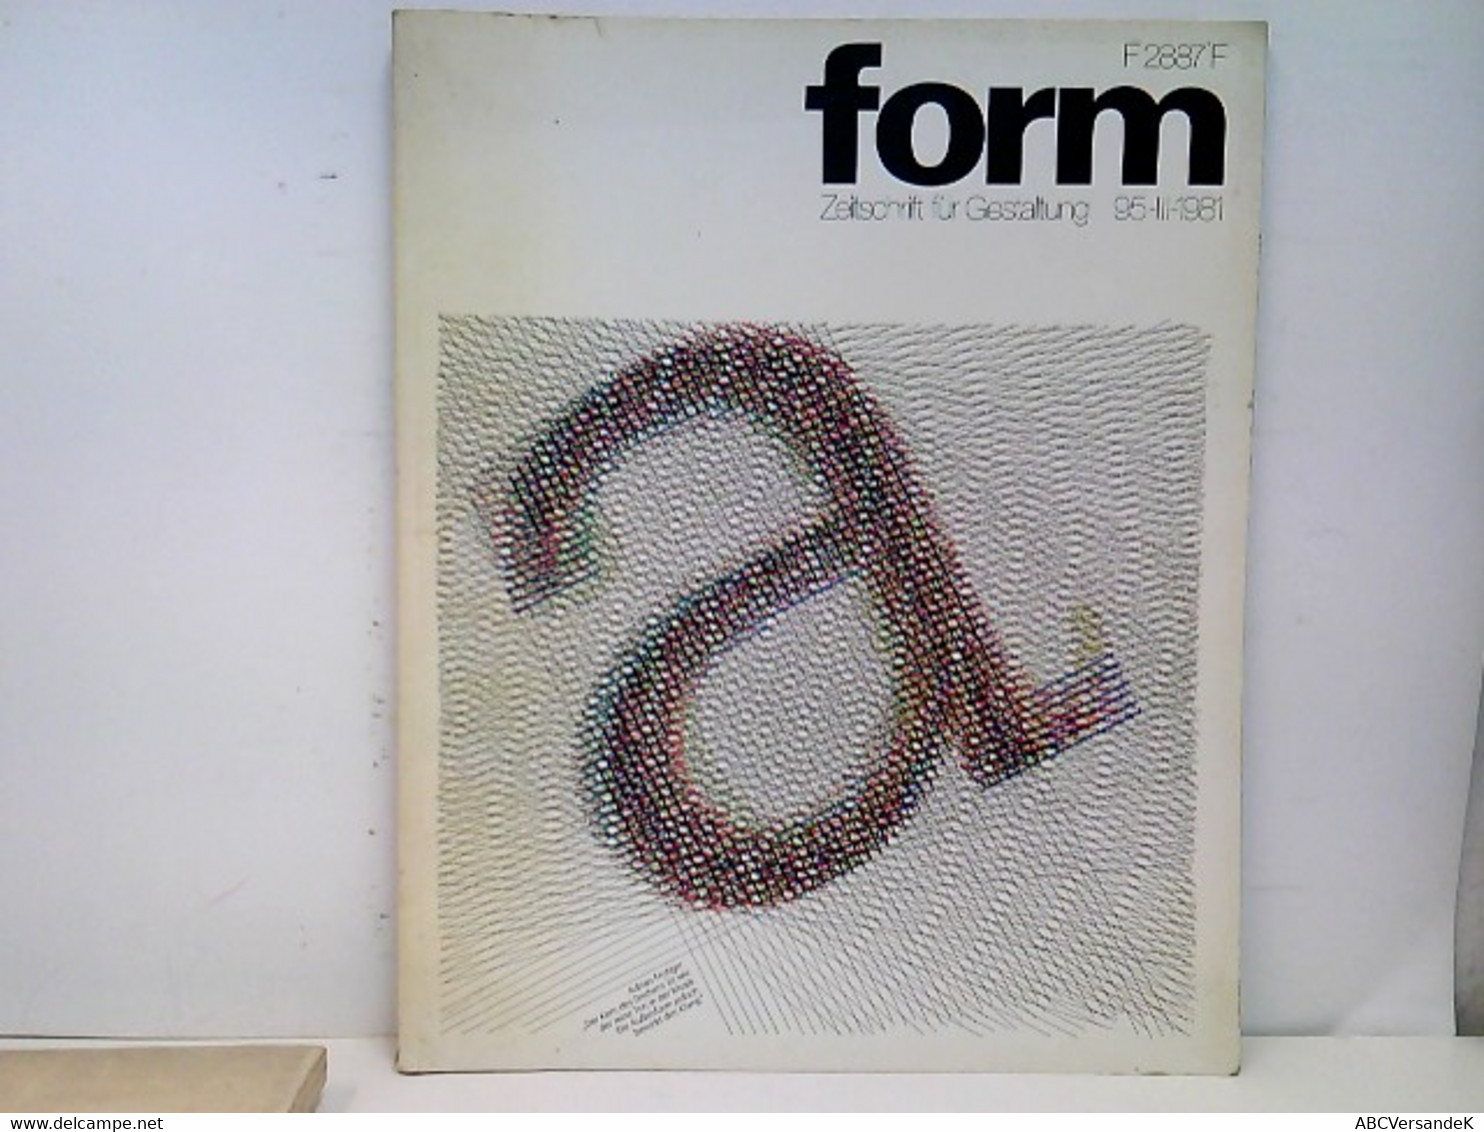 Form. Zeitschrift Für Gestaltung. Heft 95-III-1981. - Graphisme & Design